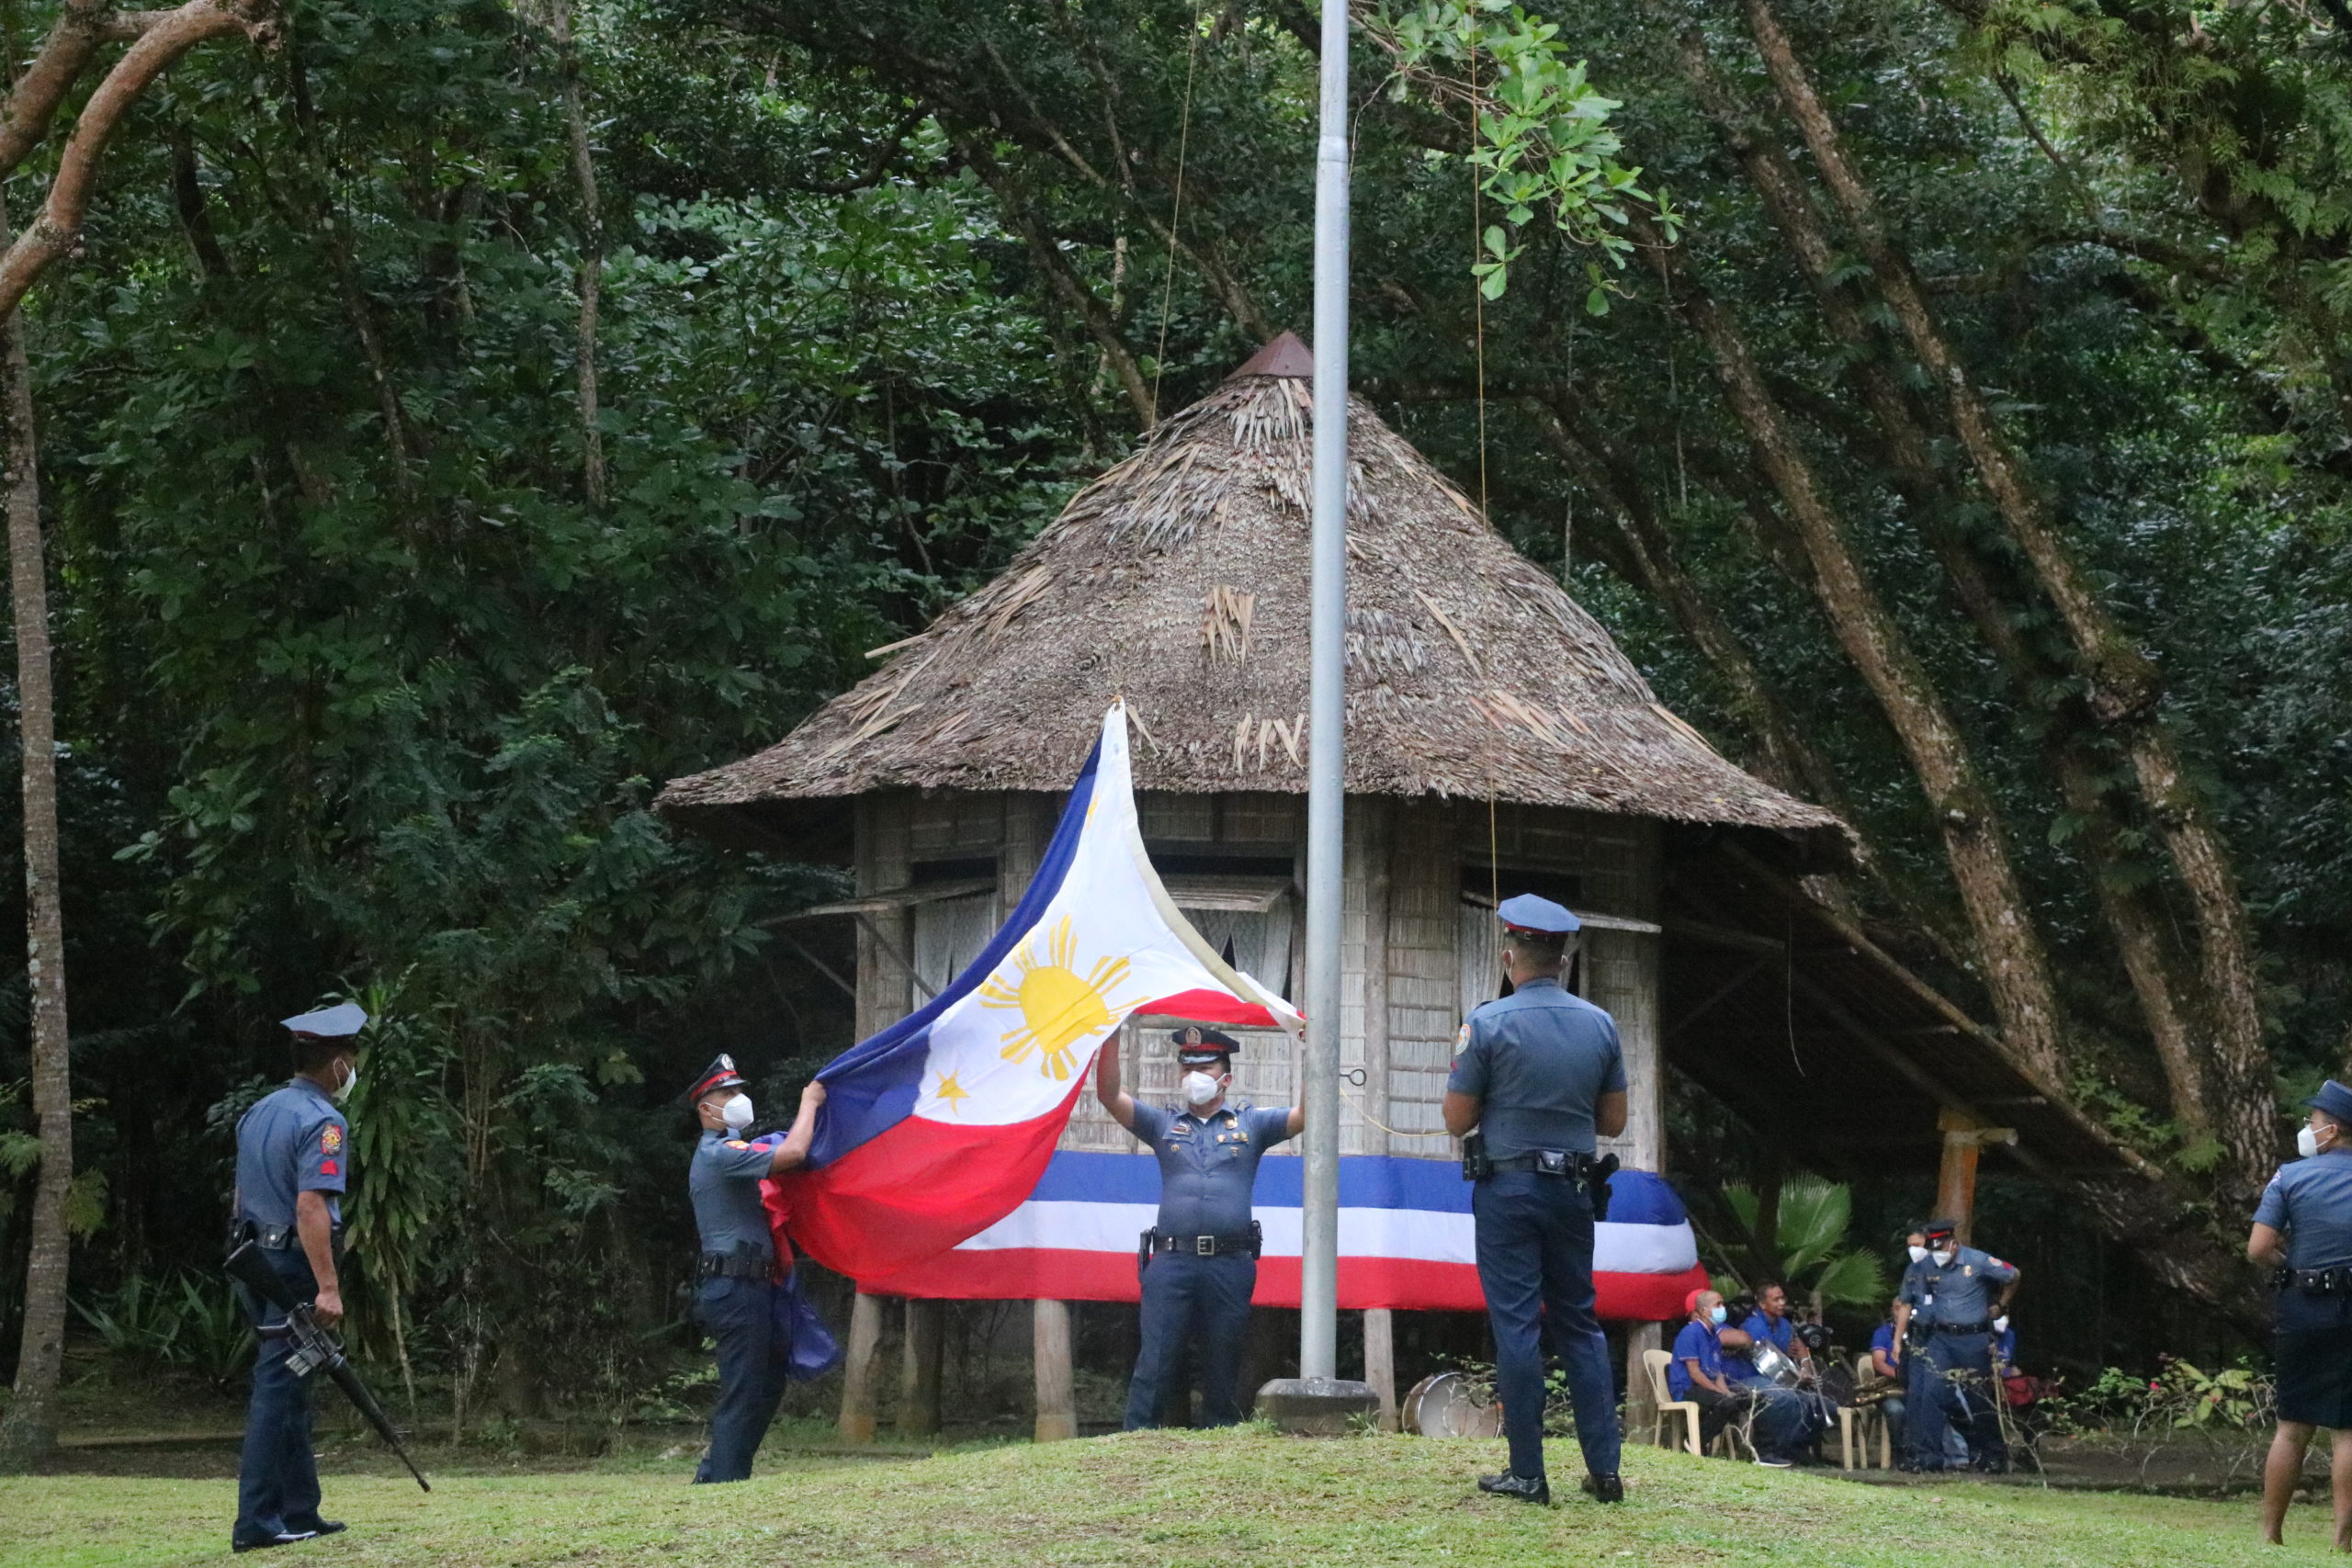 Jose Rizal's 125th death anniversary